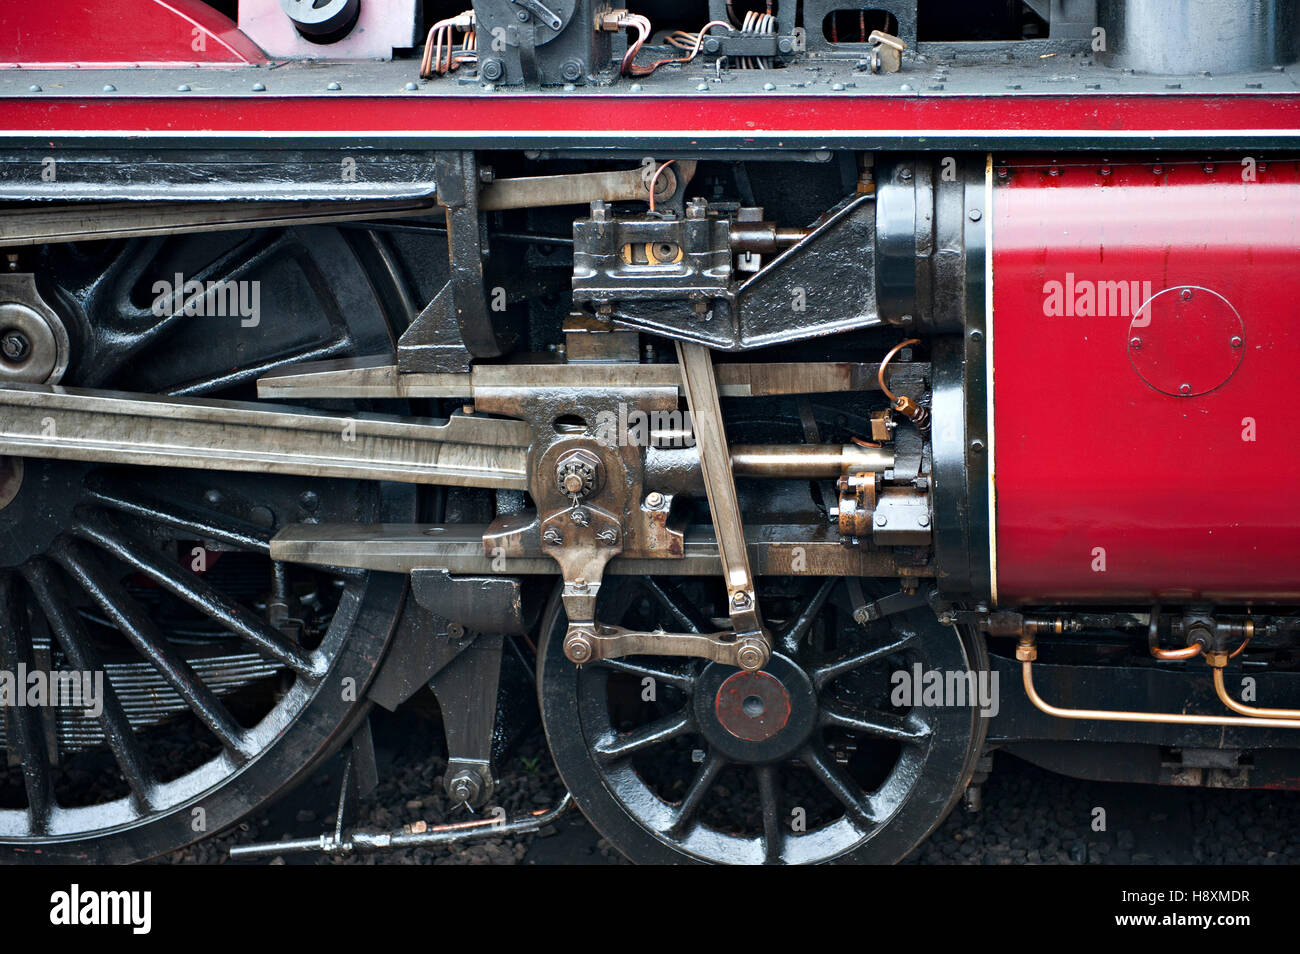 L'extrémité avant d'une locomotive à vapeur montrant les soupapes walschaerts Banque D'Images